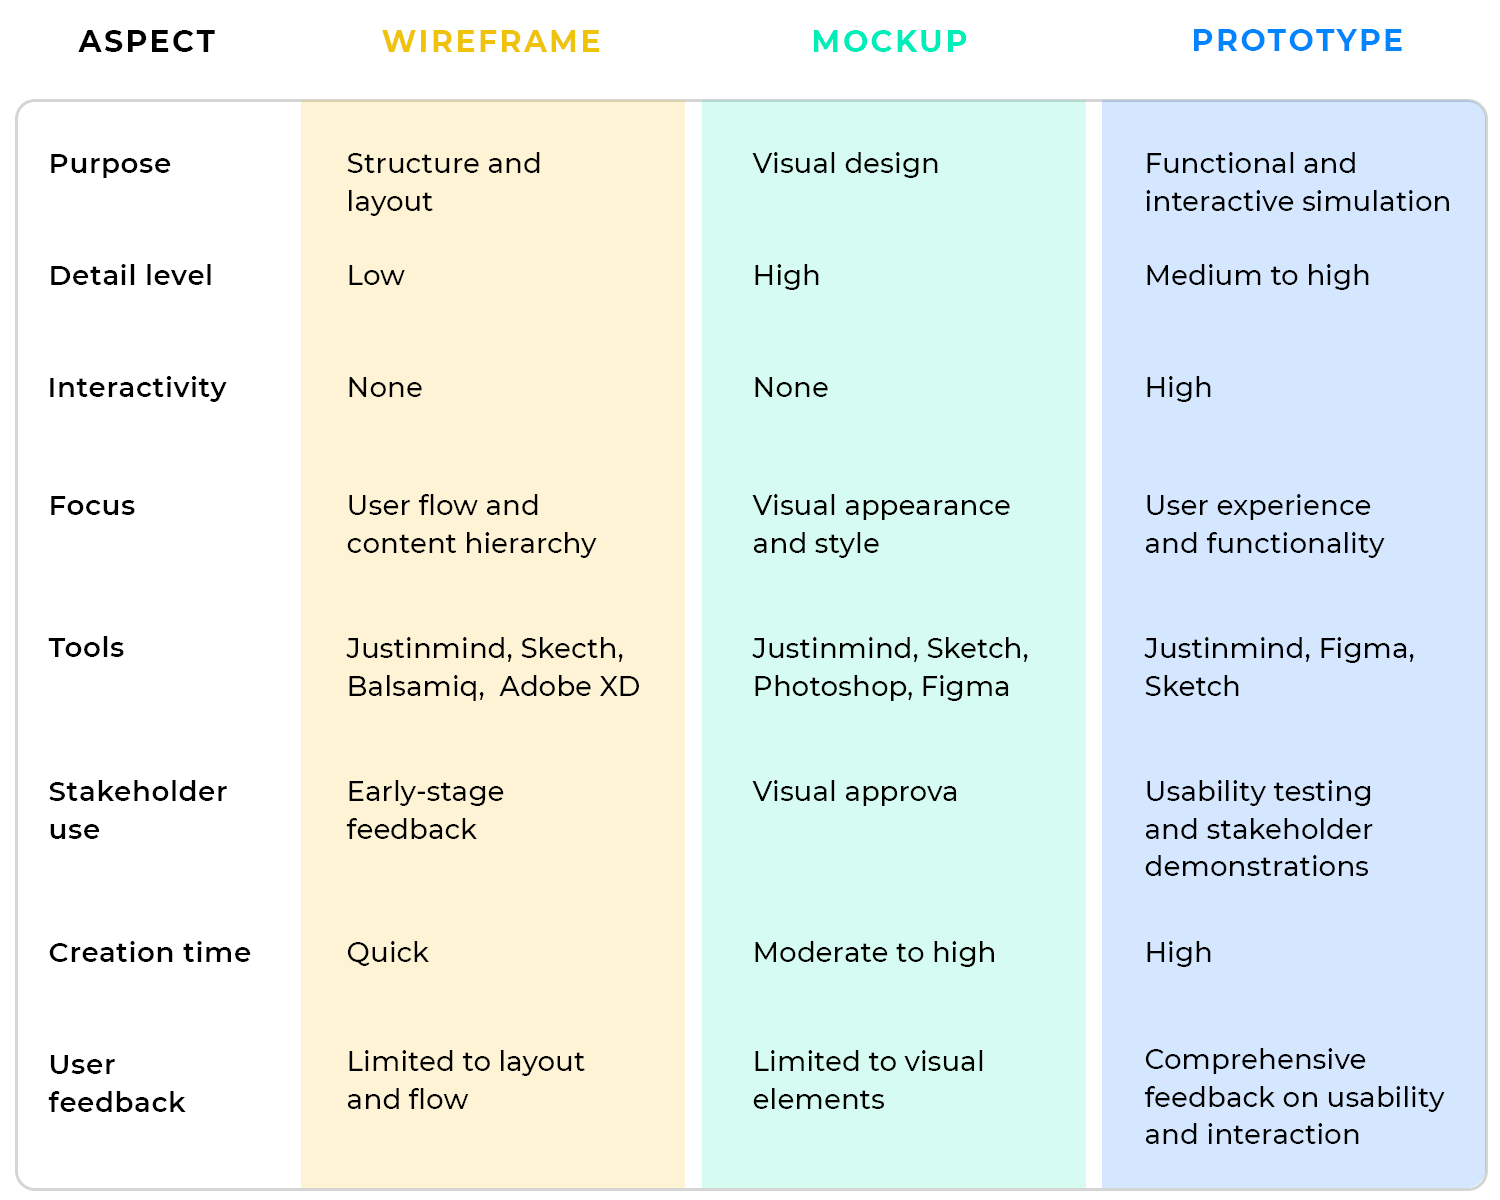 wireframe vs prototype vs mockup comparing